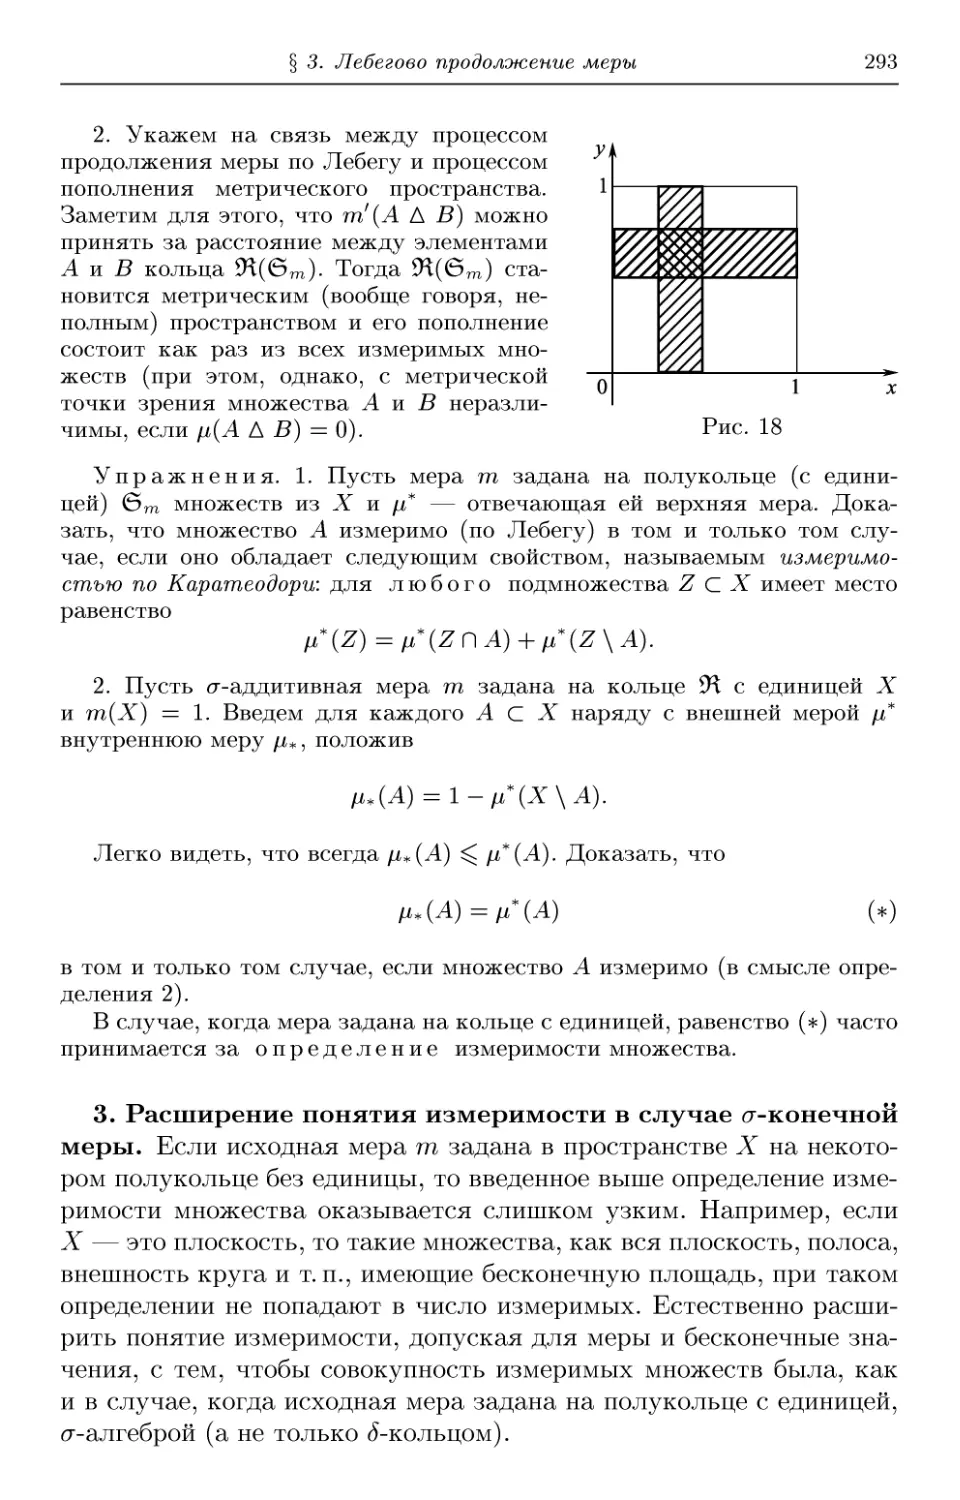 3. Расширение понятия измеримости в случае σ-конечной меры